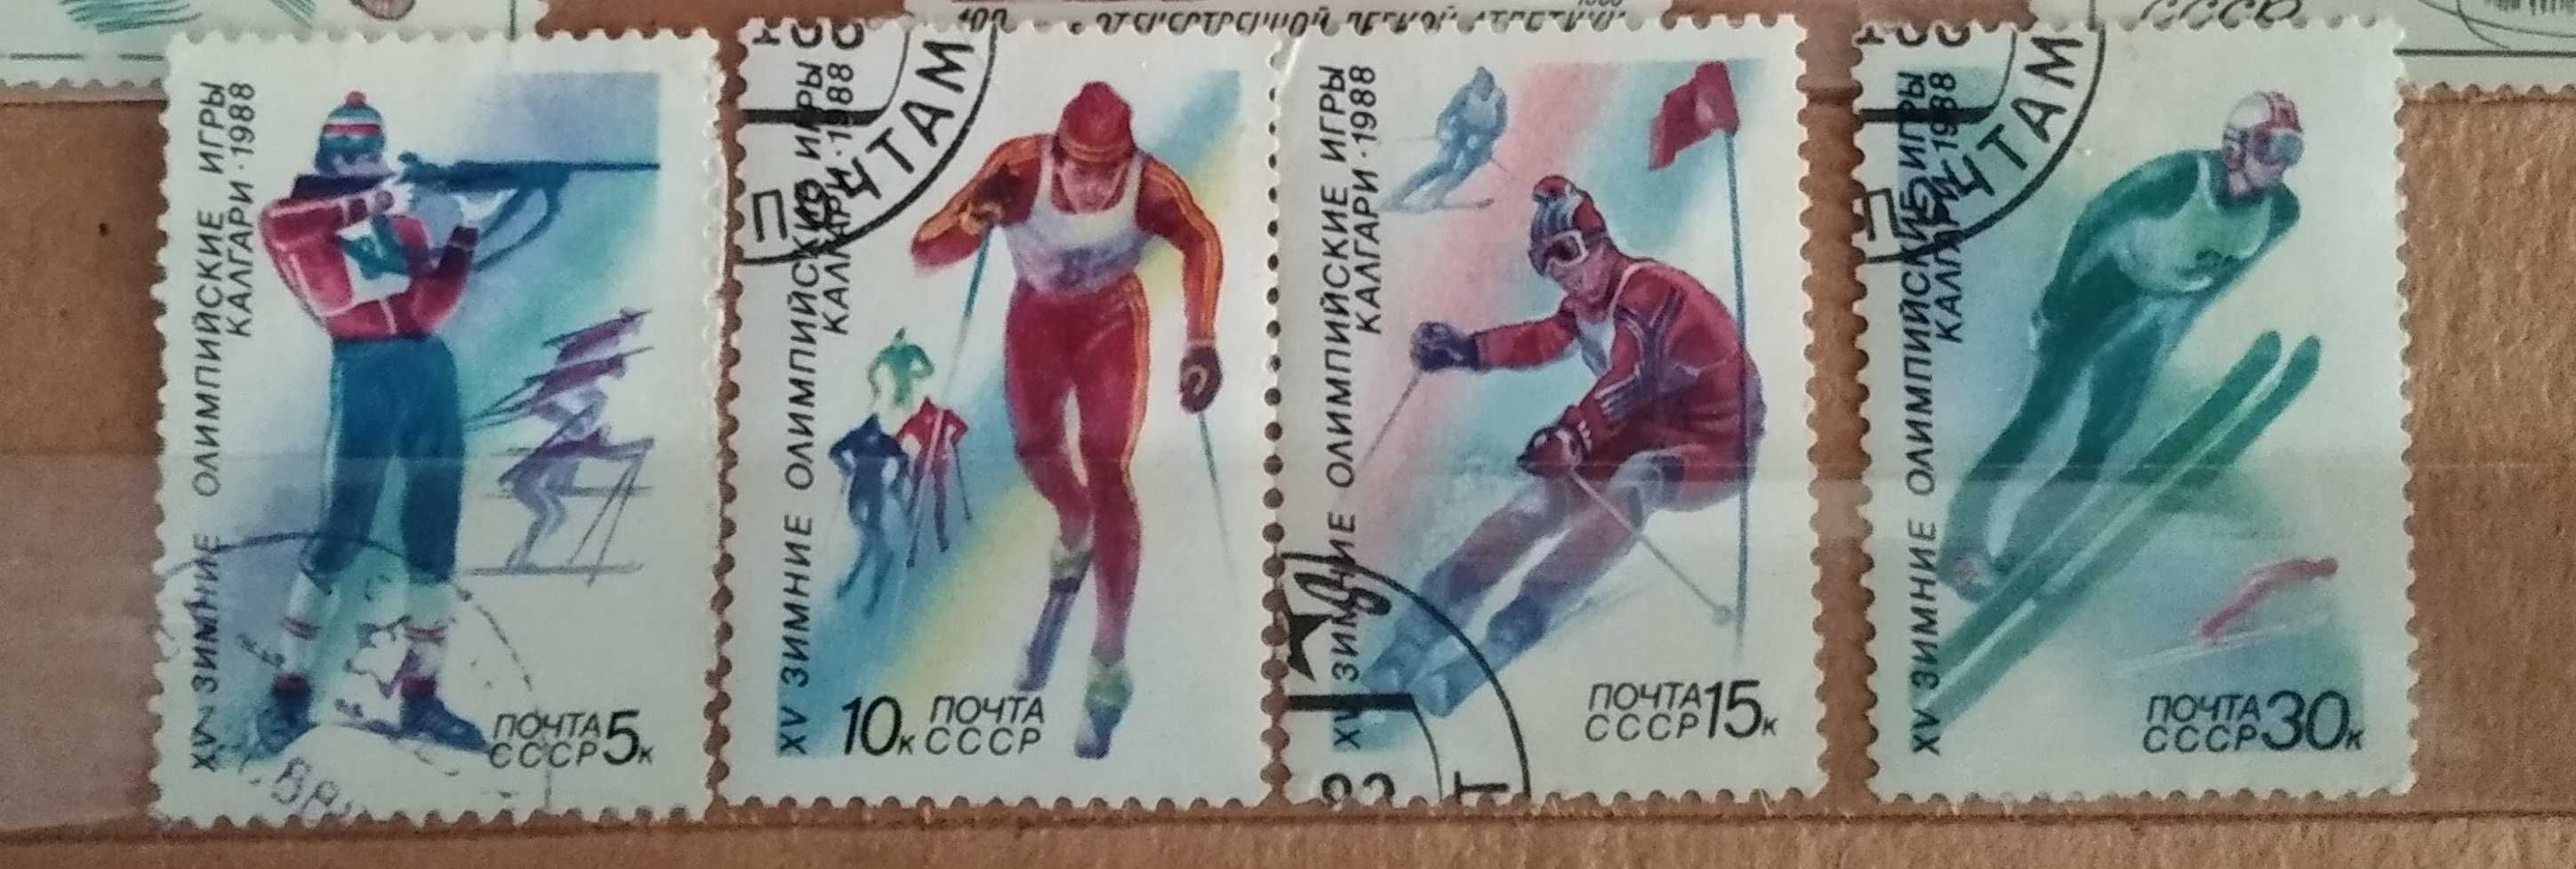 Марки. Зимние Олимпийские игры. Калгари 1988